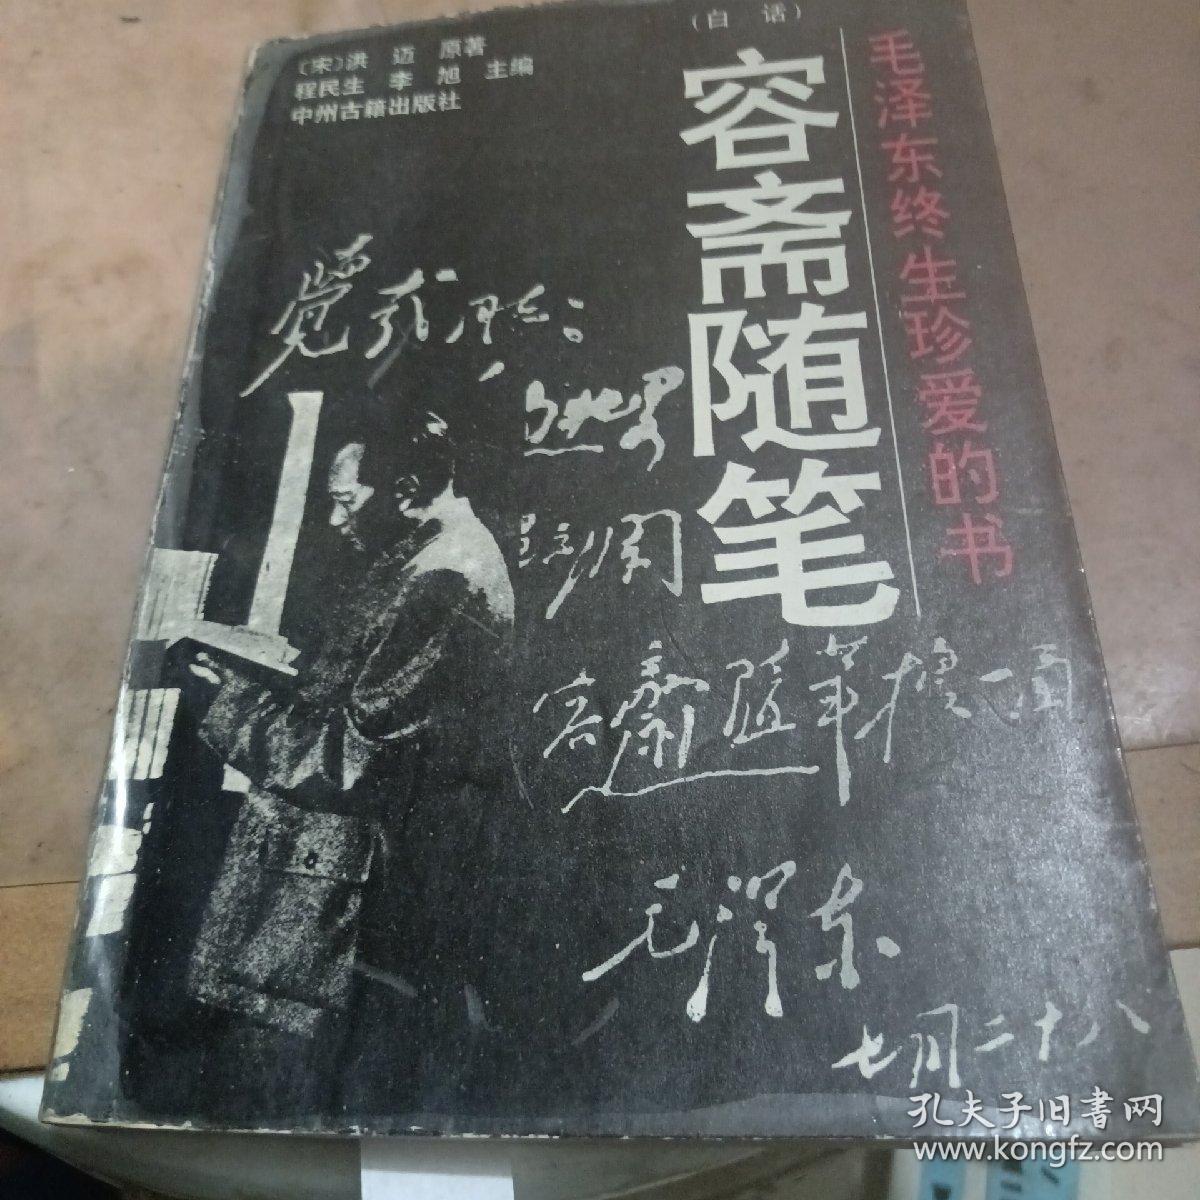 毛泽东终生真爱的书容斋随笔。